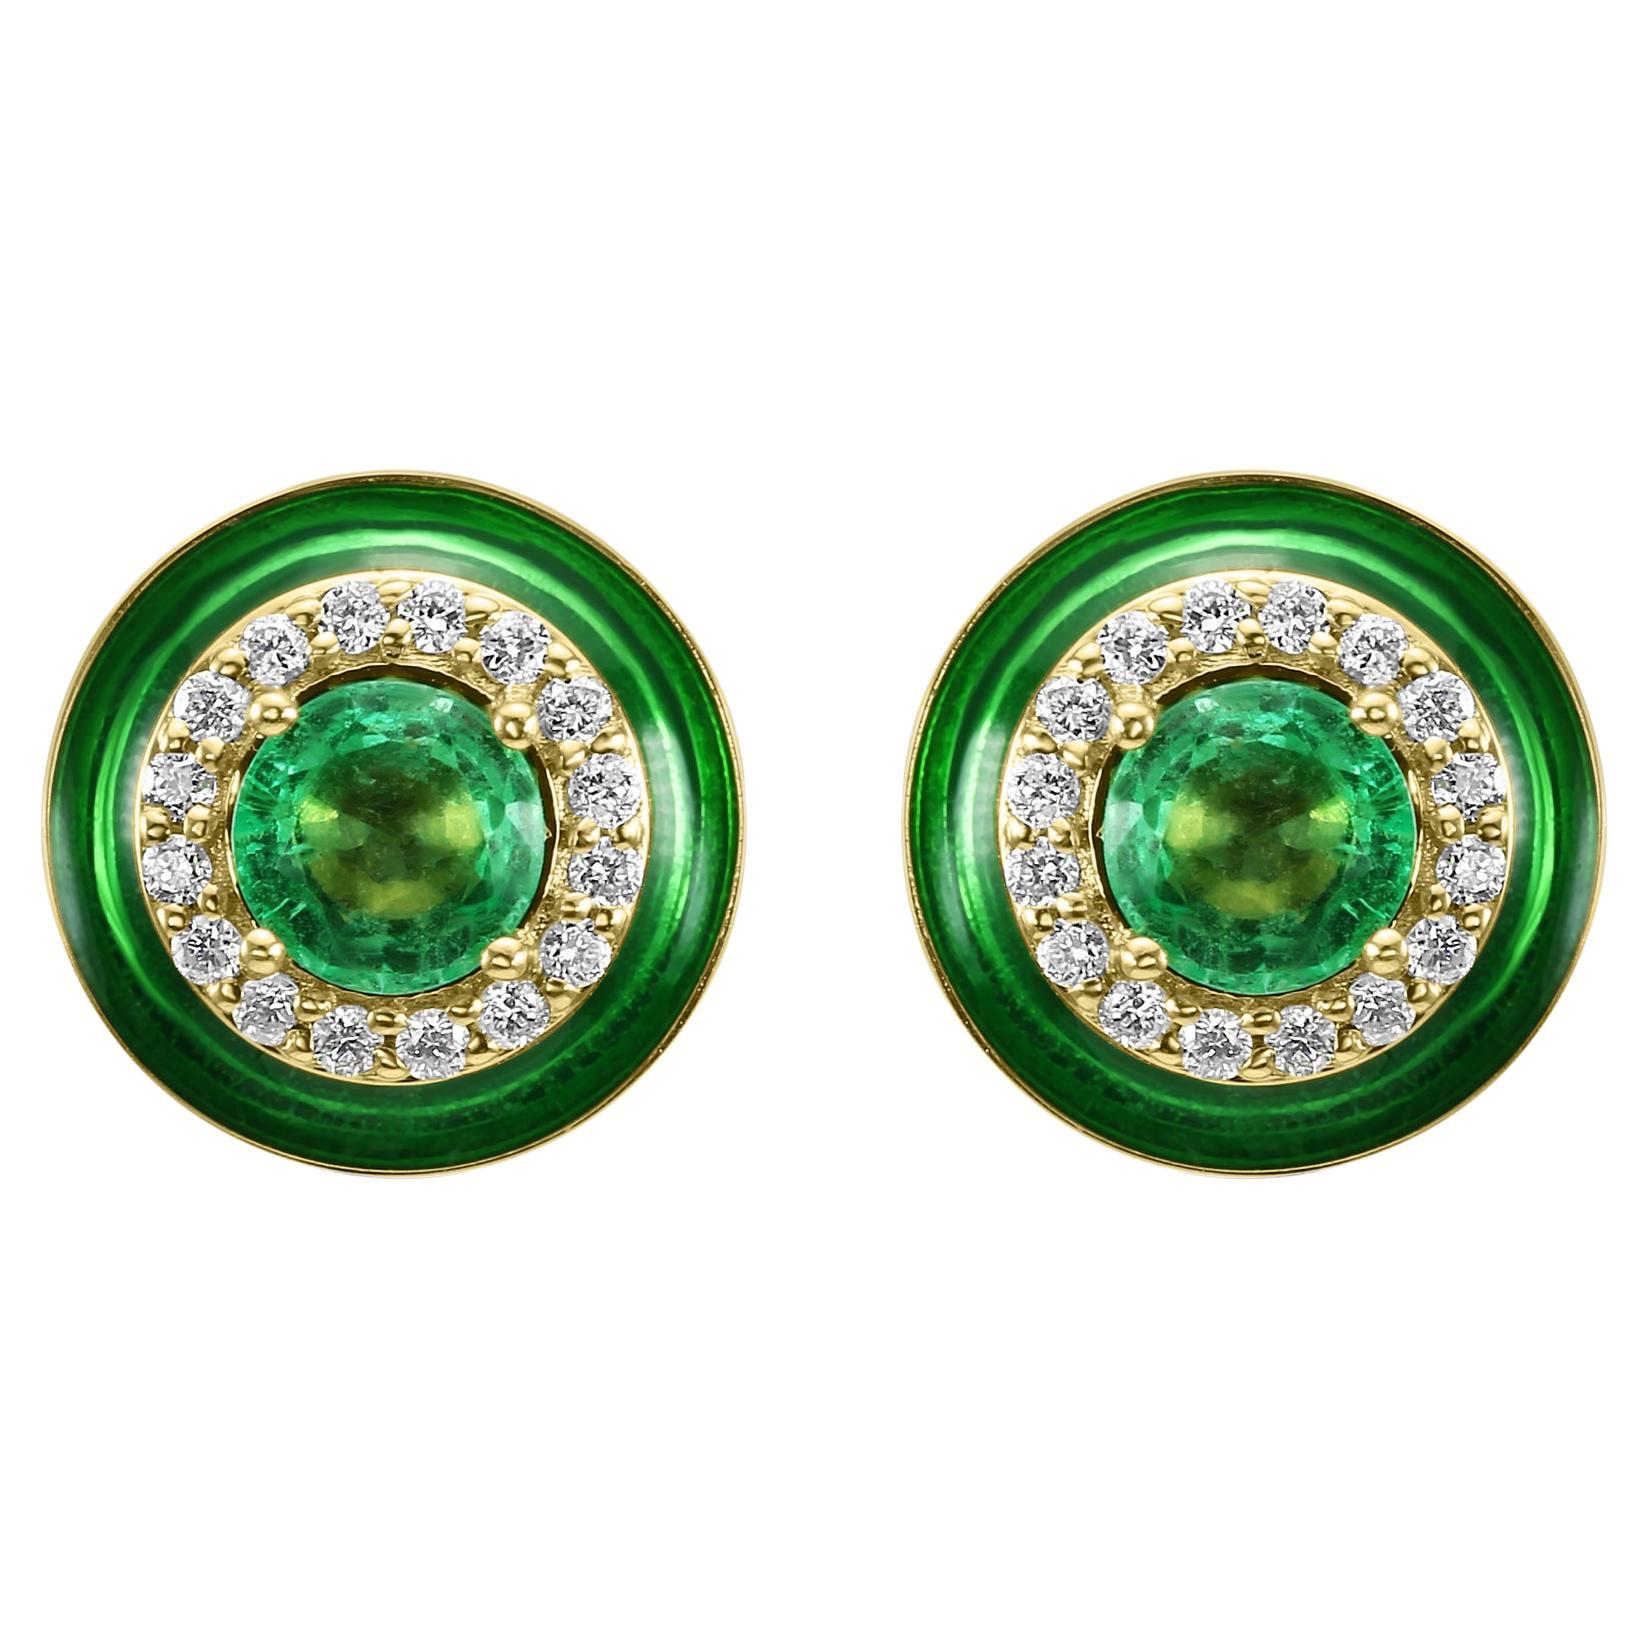 Smaragd Runder Weißer Diamant Grüner Diamant Grüner Emaille Halo 18K Gelbgold Mode Ohrring